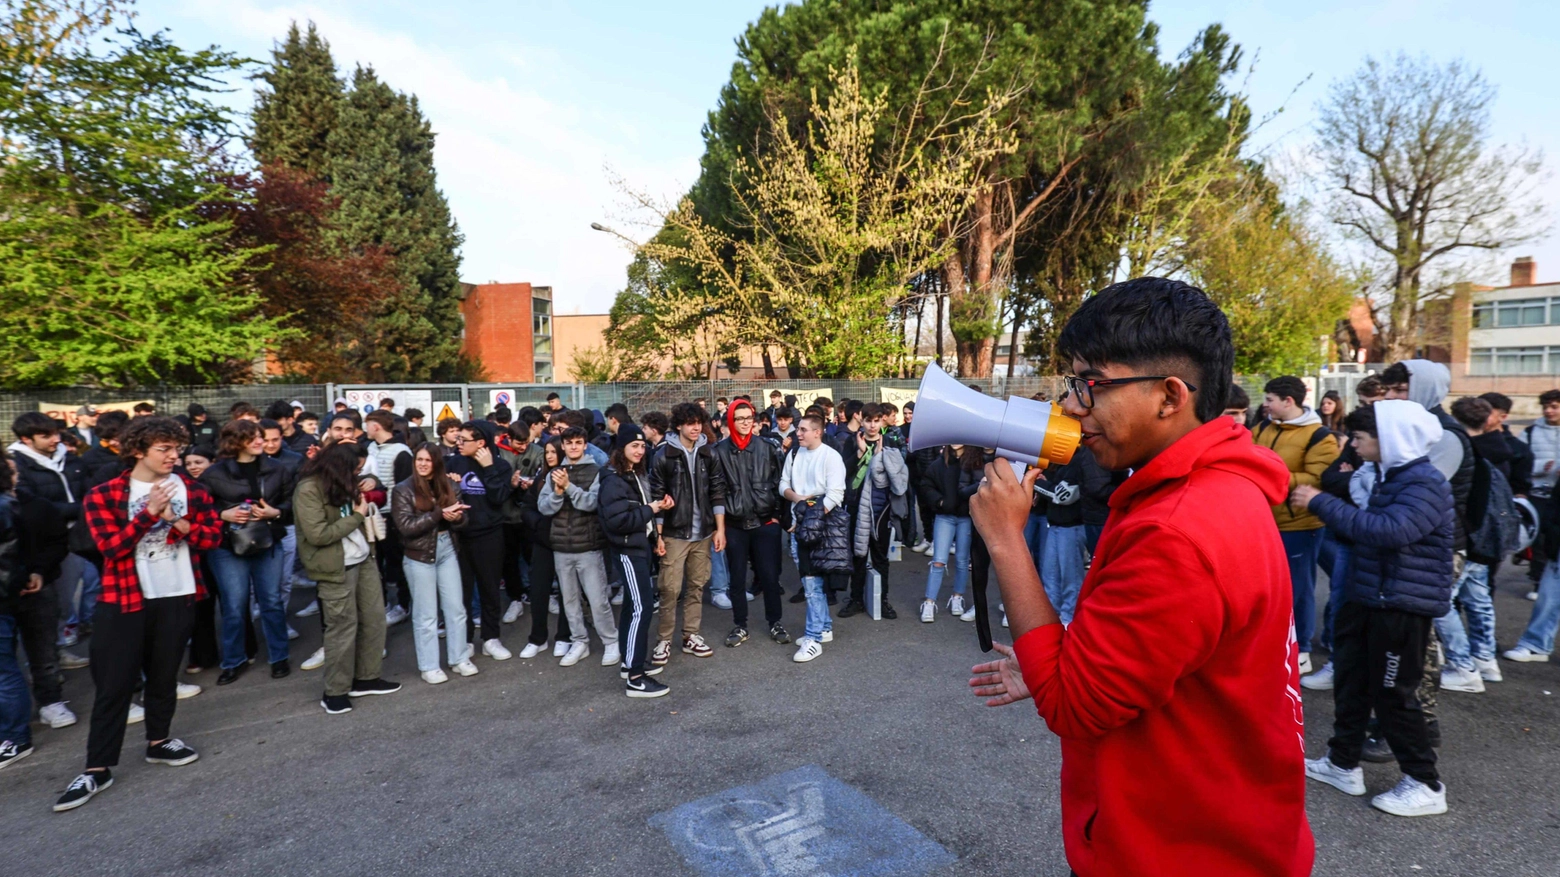 La protesta degli studenti  Il sindaco: "Sto con loro"  E chiede attenzione   agli uffici scolastici